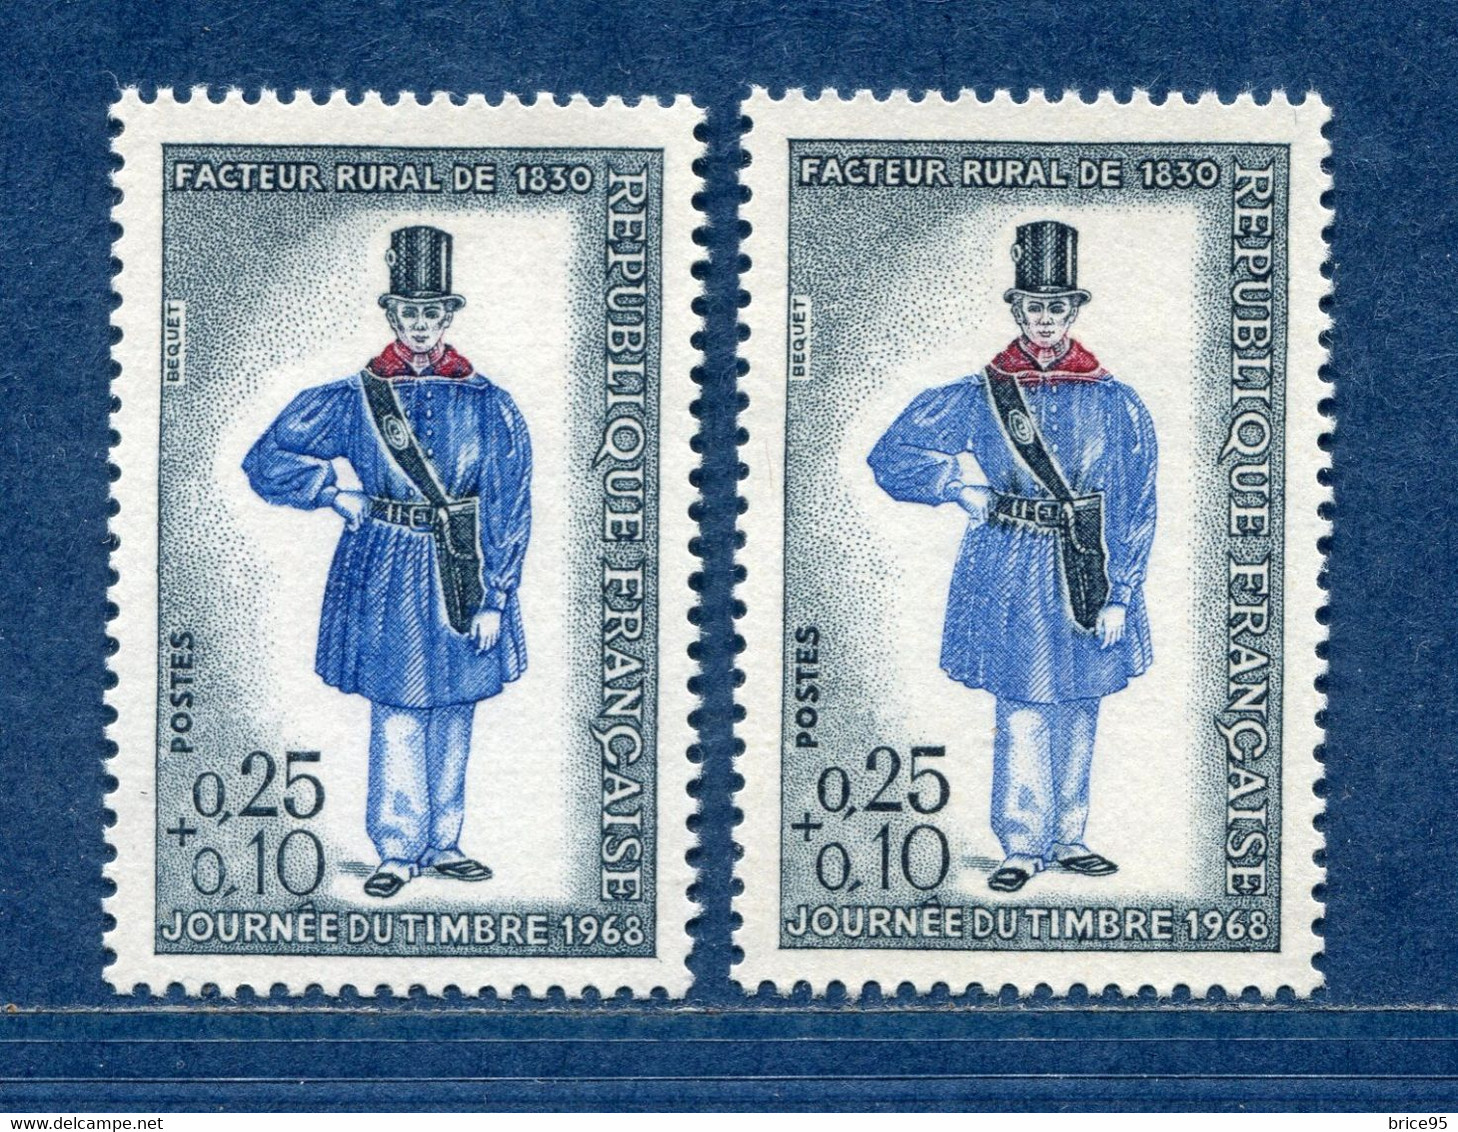 ⭐ France - Variété - YT N° 1549 - Couleurs - Pétouilles - Neuf Sans Charnière - 1968 ⭐ - Unused Stamps